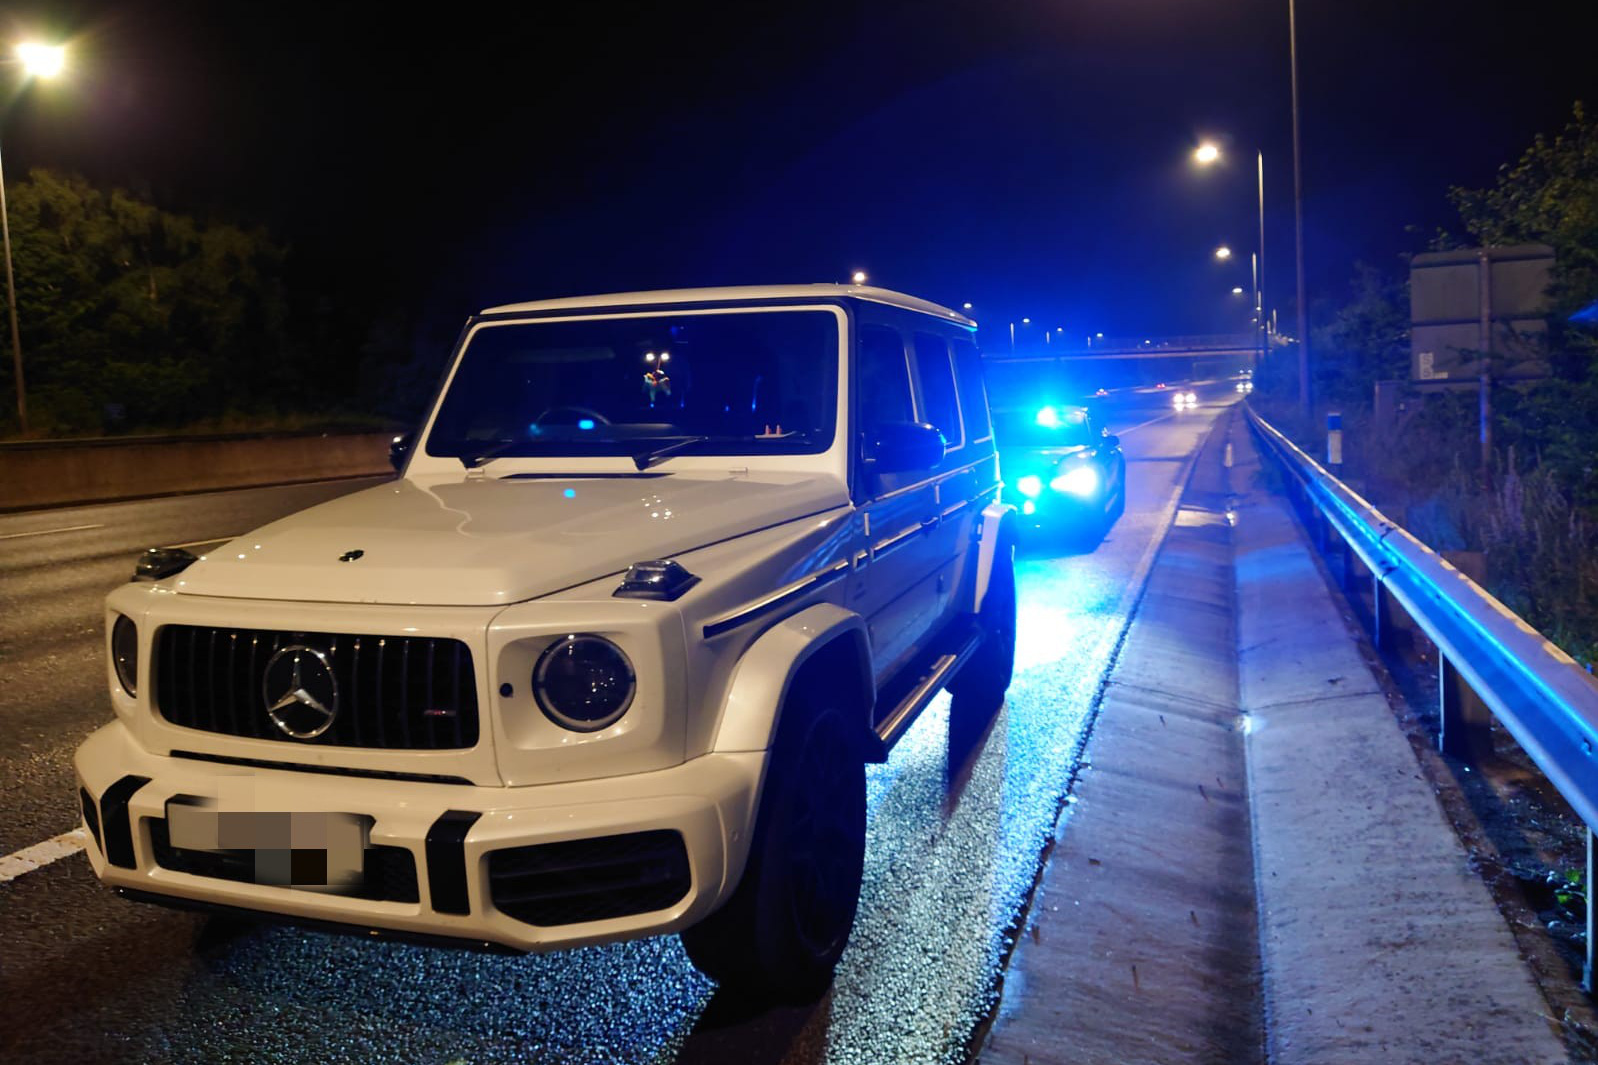 Buồn đi vệ sinh, nữ tài xế cầm lái Mercedes-AMG G63 phi 210 km/h